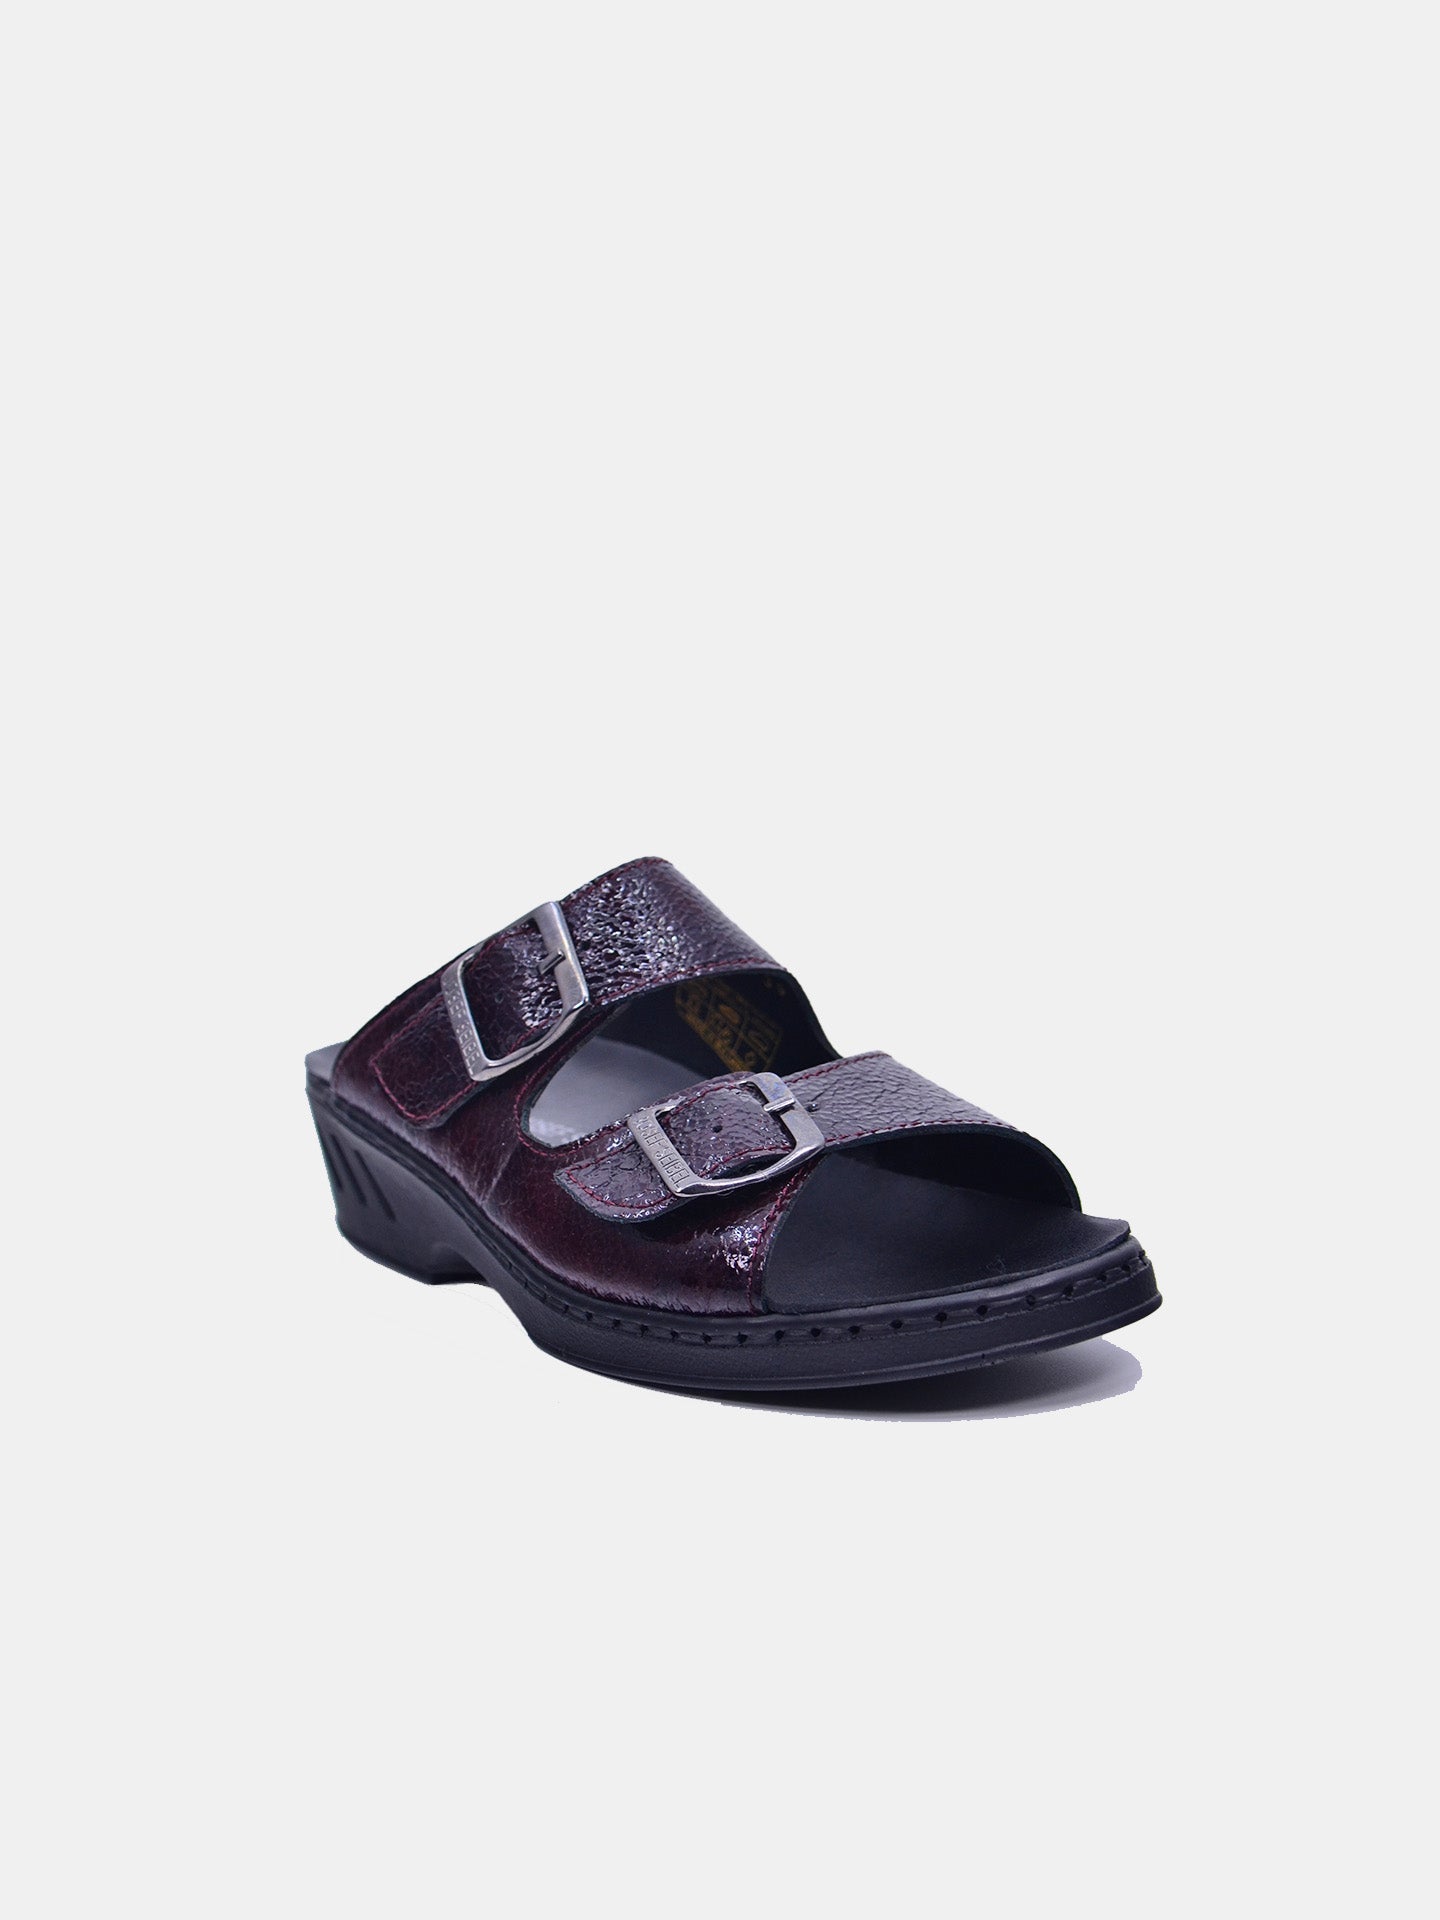 Josef Seibel 08801 Women's Flat Sandals #color_Maroon